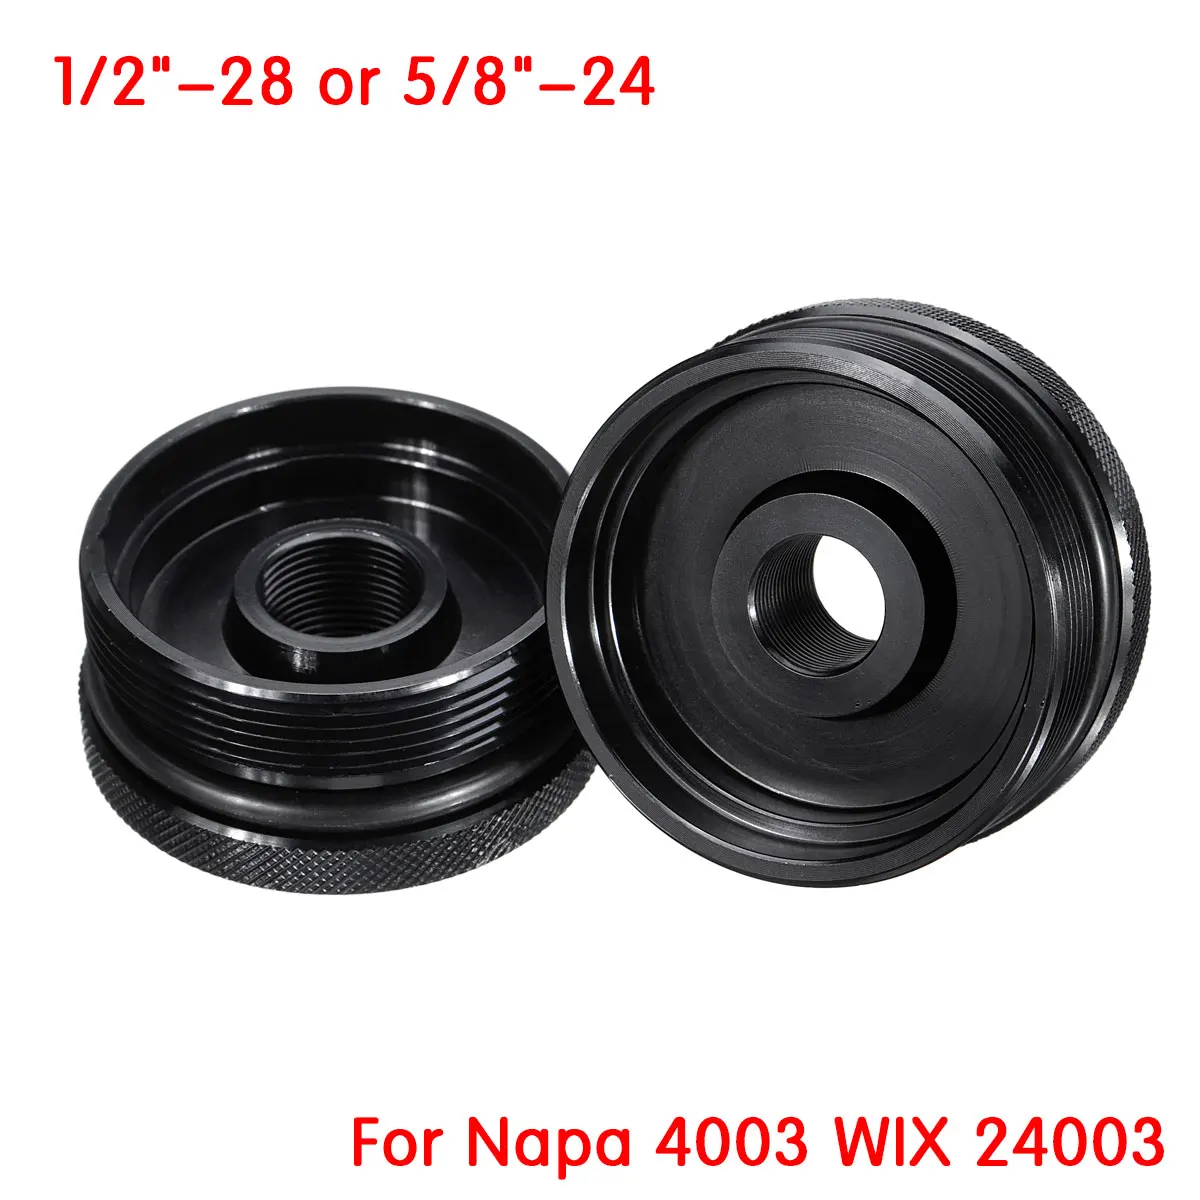 Car Fuel Filter Cap Cover Caps FOR Napa 4003 WIX 24003 1/2